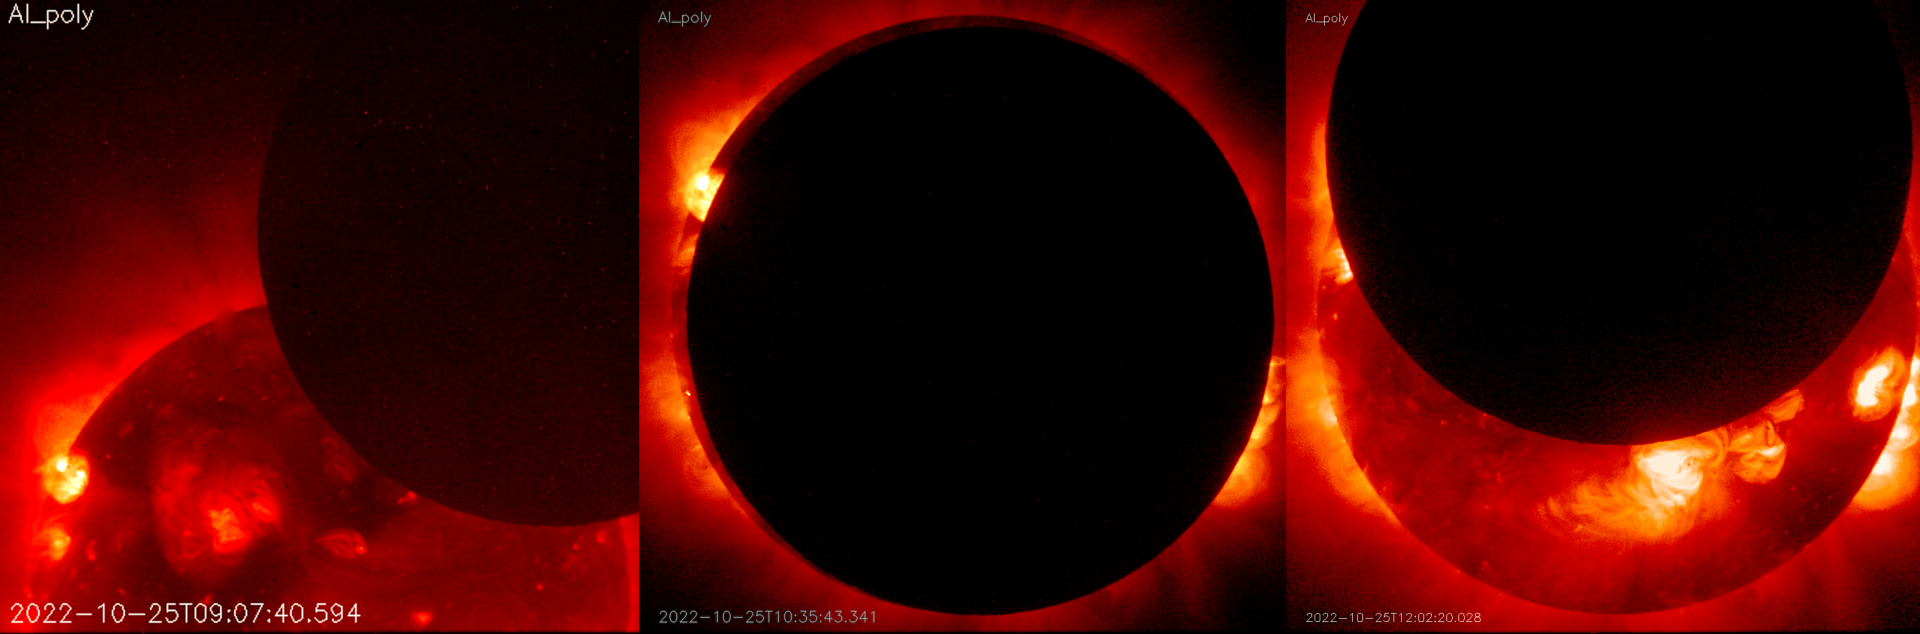 Солнечное затмение 25 октября 2022, как его видел спутник Hinode с орбиты Земли